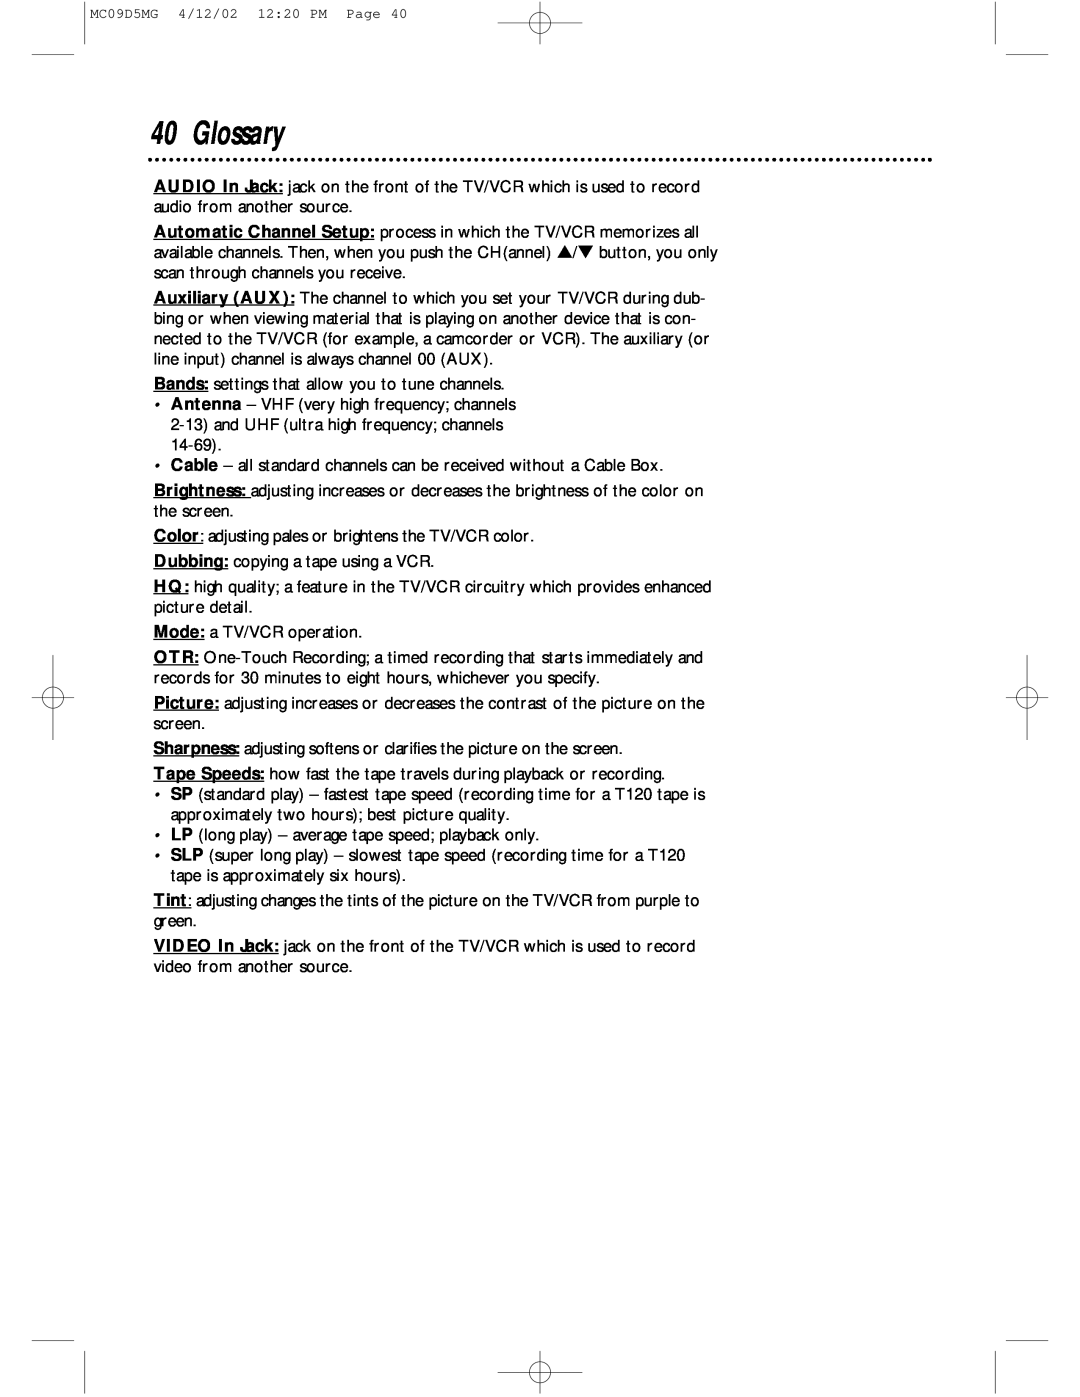 Magnavox MC09D5MG owner manual Glossary 